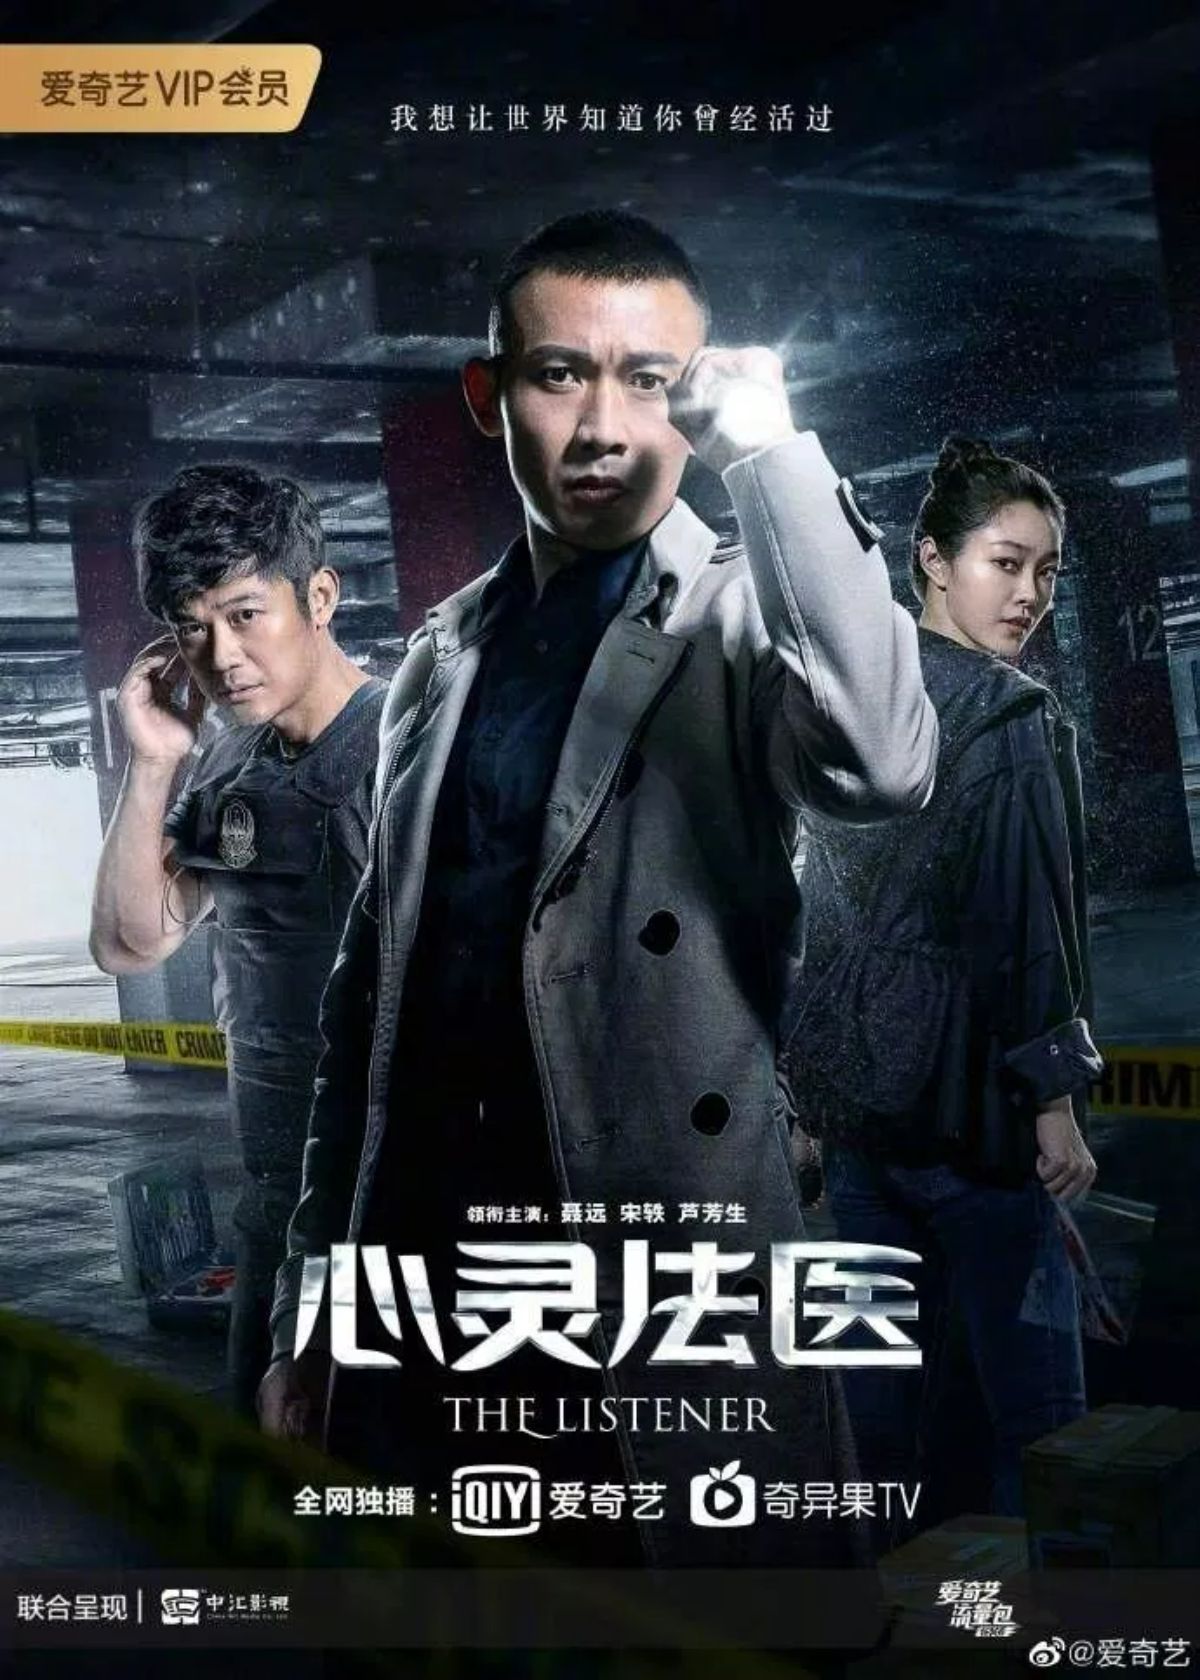 Pháp Y Tâm Linh – The Listener là bộ phim phá án Trung Quốc khai thác đề tài pháp y, khám nghiệm tử thi để điều tra vụ án